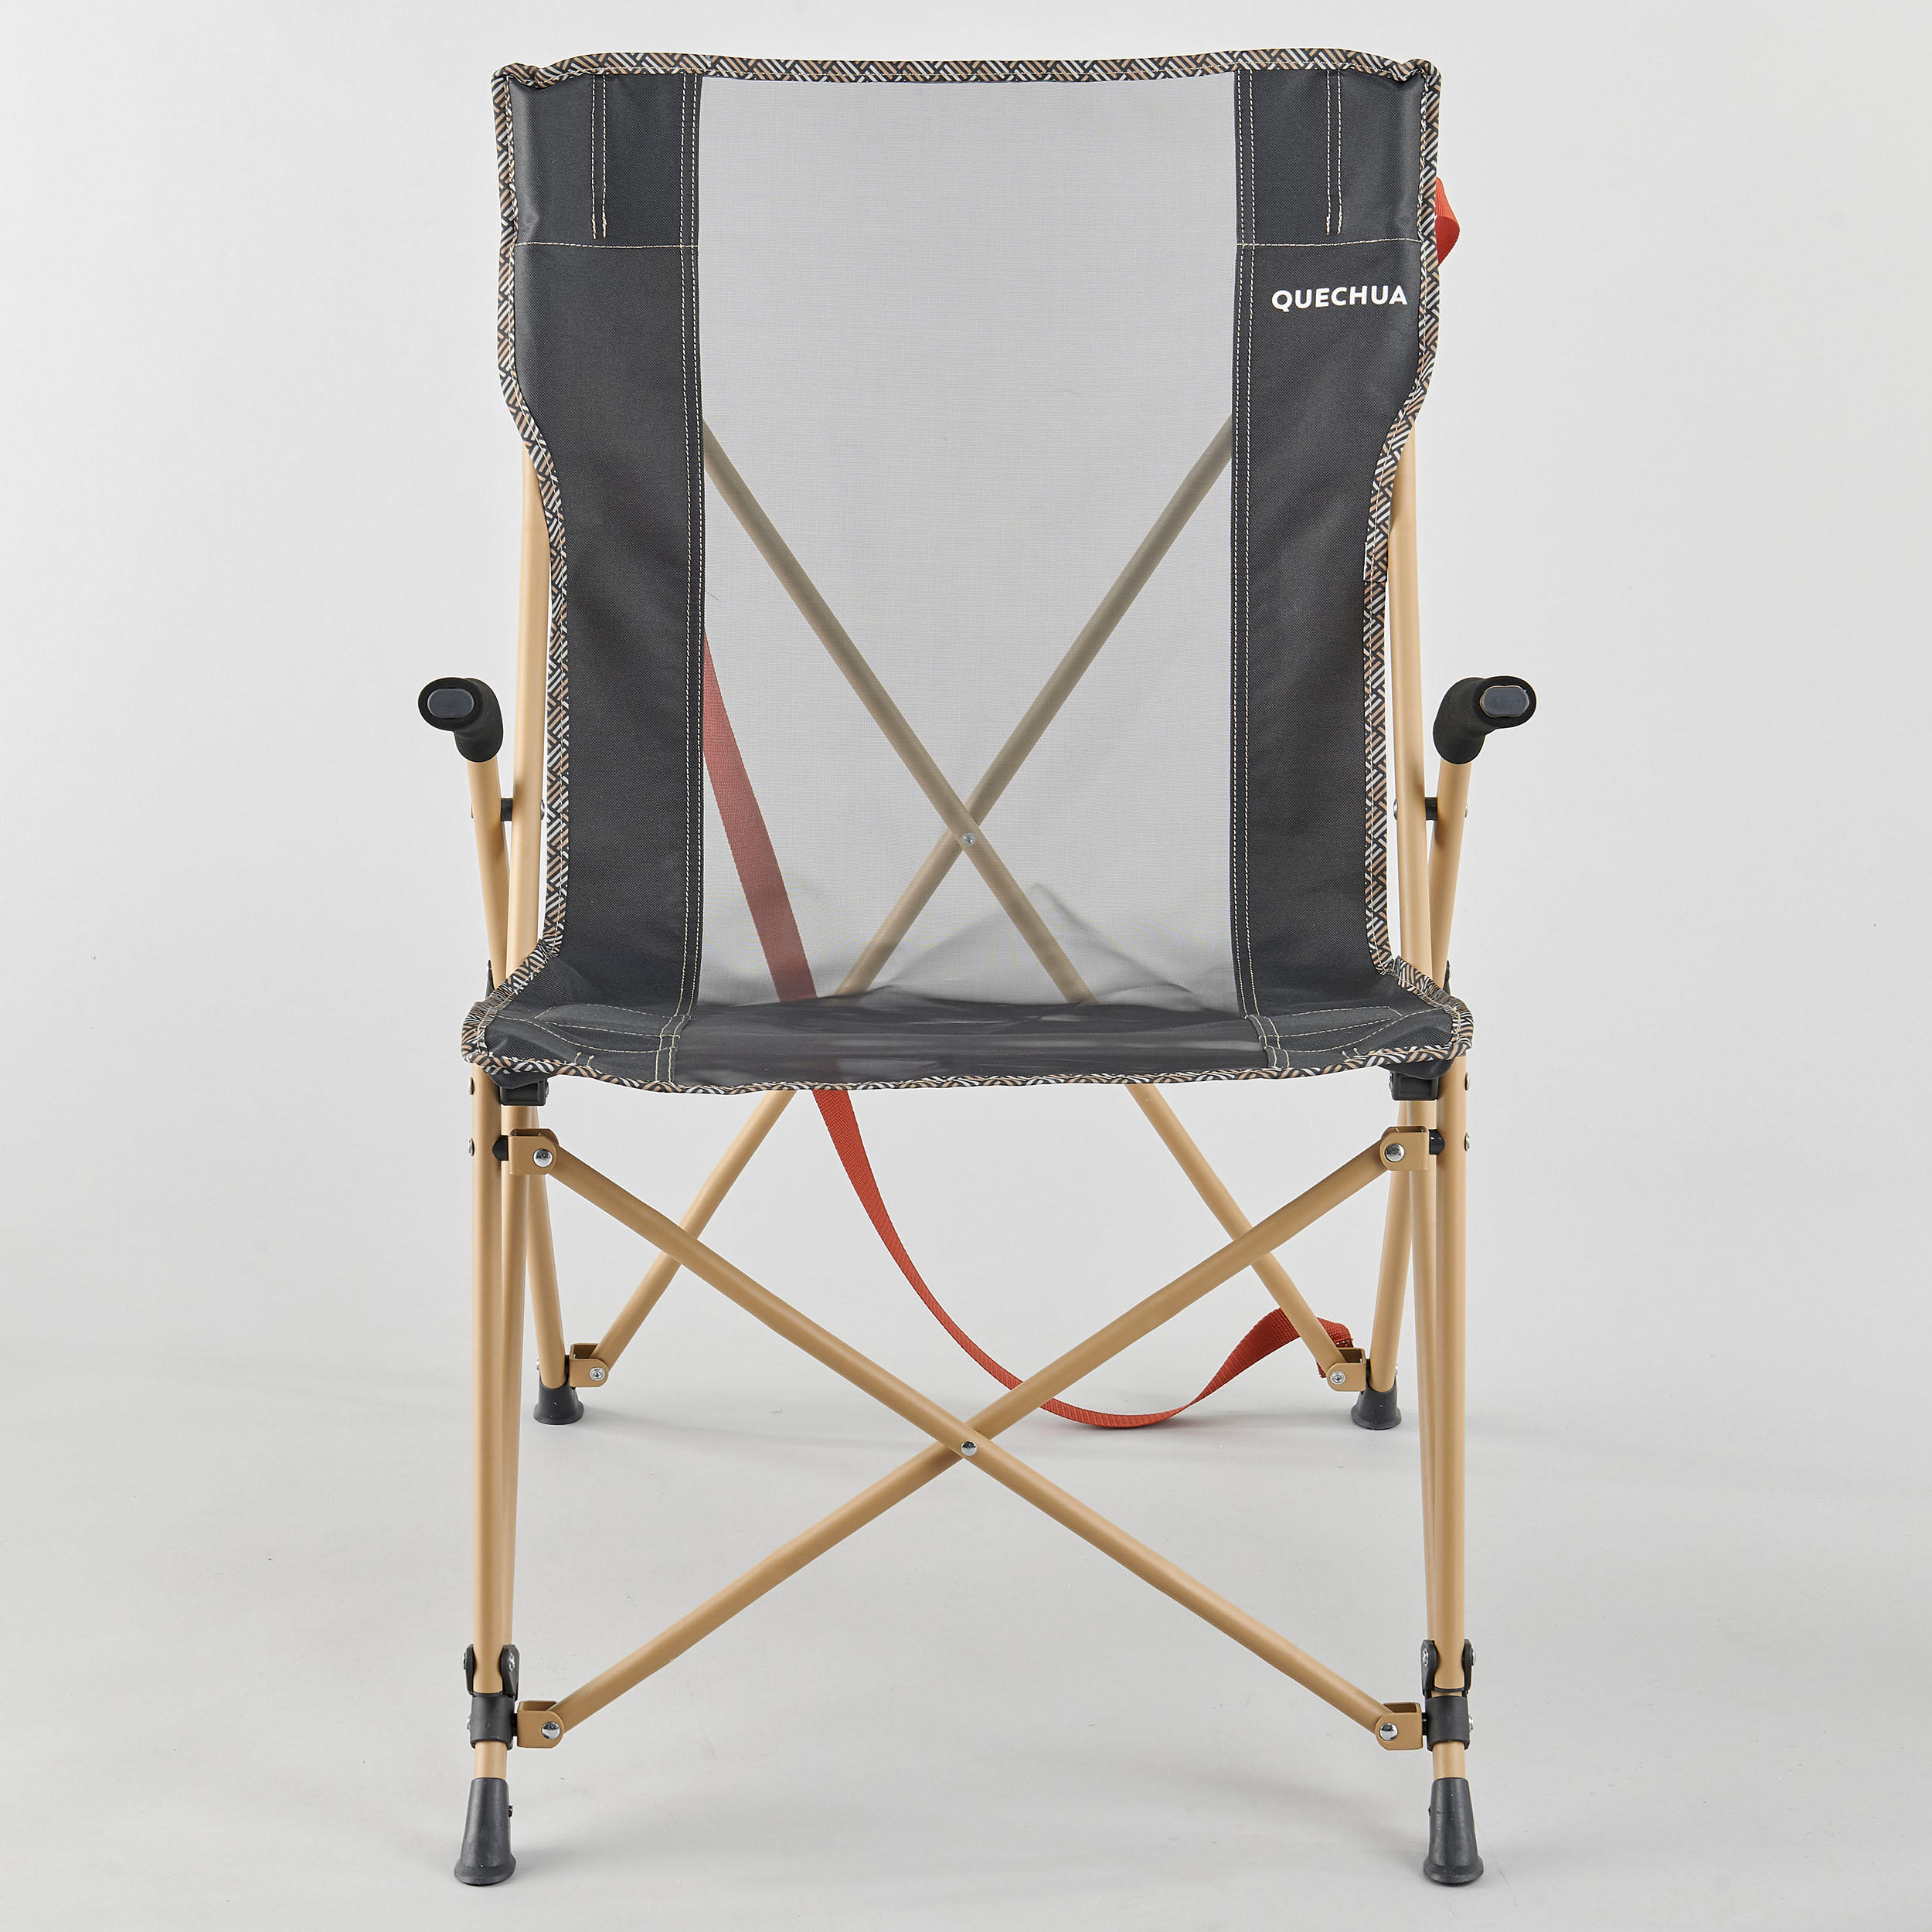 Ga naar beneden mesh Reusachtig Comfortabele vouwstoel met armleuningen voor de camping | QUECHUA |  Decathlon.nl